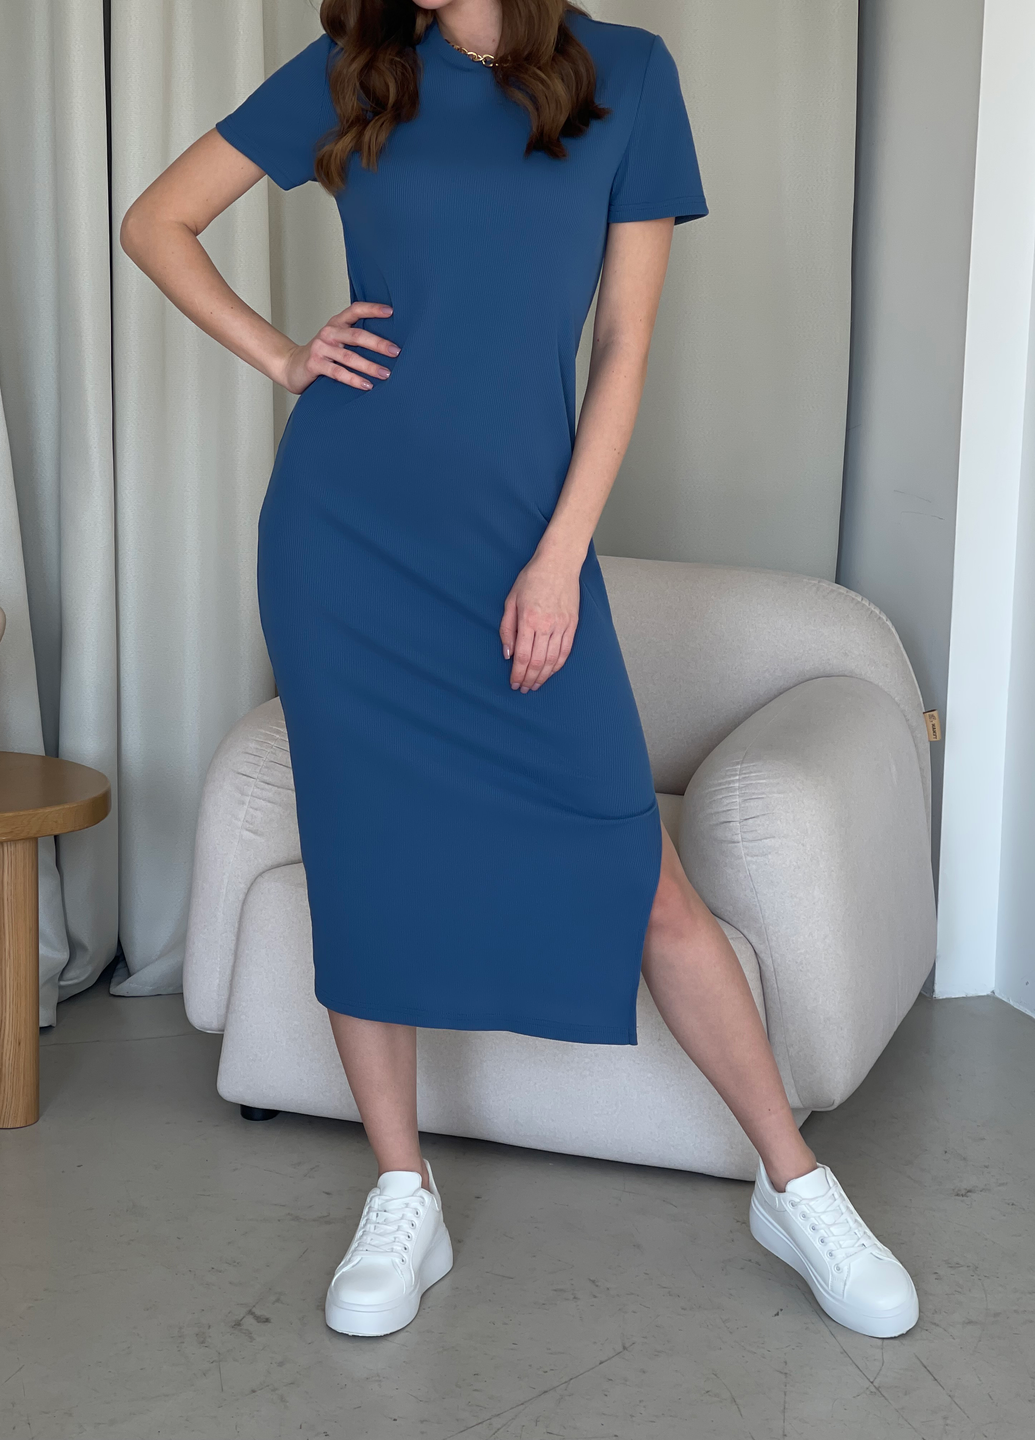 Купить Длинное платье-футболка в рубчик синее Merlini Кассо 700000131 размер 42-44 (S-M) в интернет-магазине